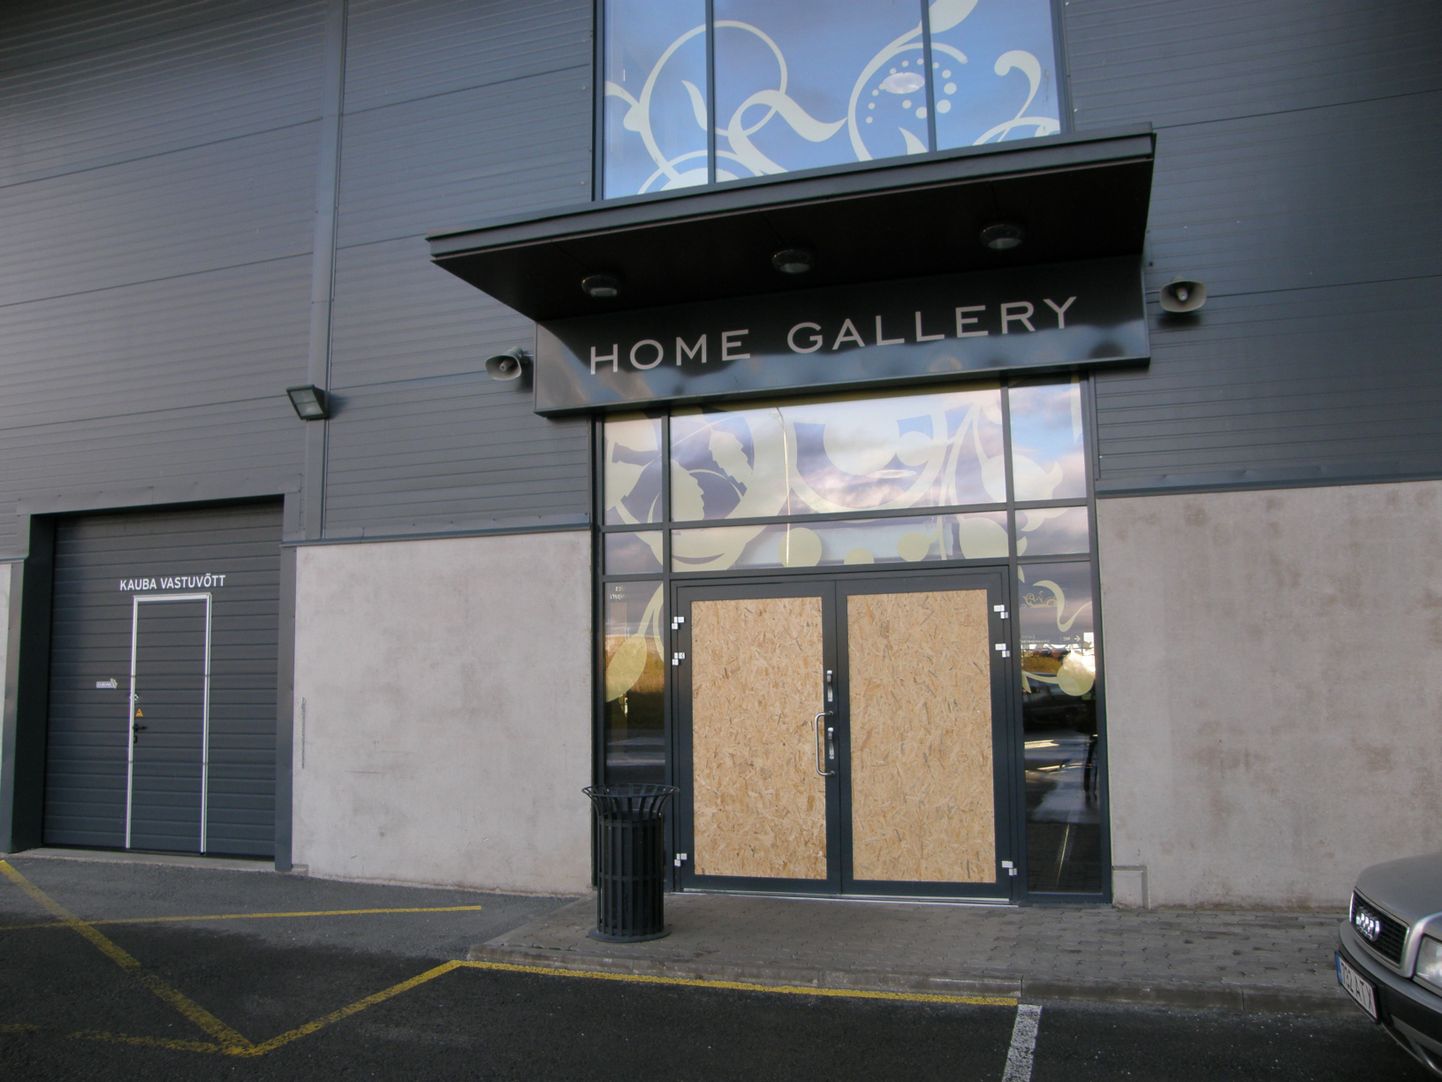 Pärast esimest sissemurdmist parandati Home Gallery tagauks puitplaadiga. Järgmisel ööl lõid vargad aga puruks ka teise uksepoole klaasi ja praegu on mõlemad uksed plaadiga paigatud.